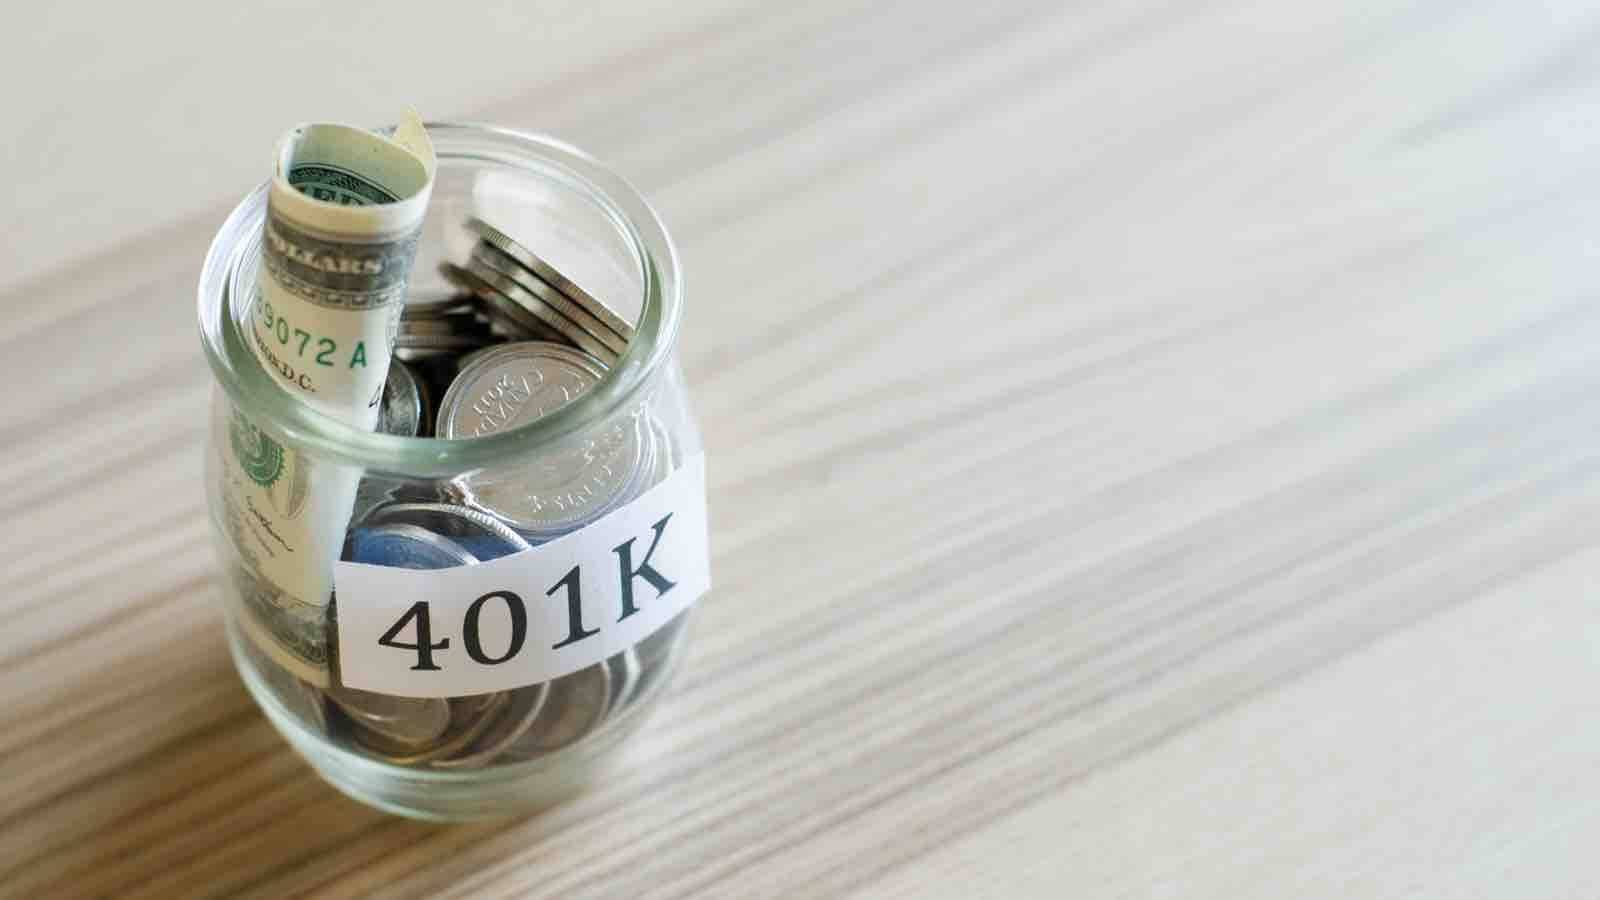 401k-Savings-Contribute.jpg